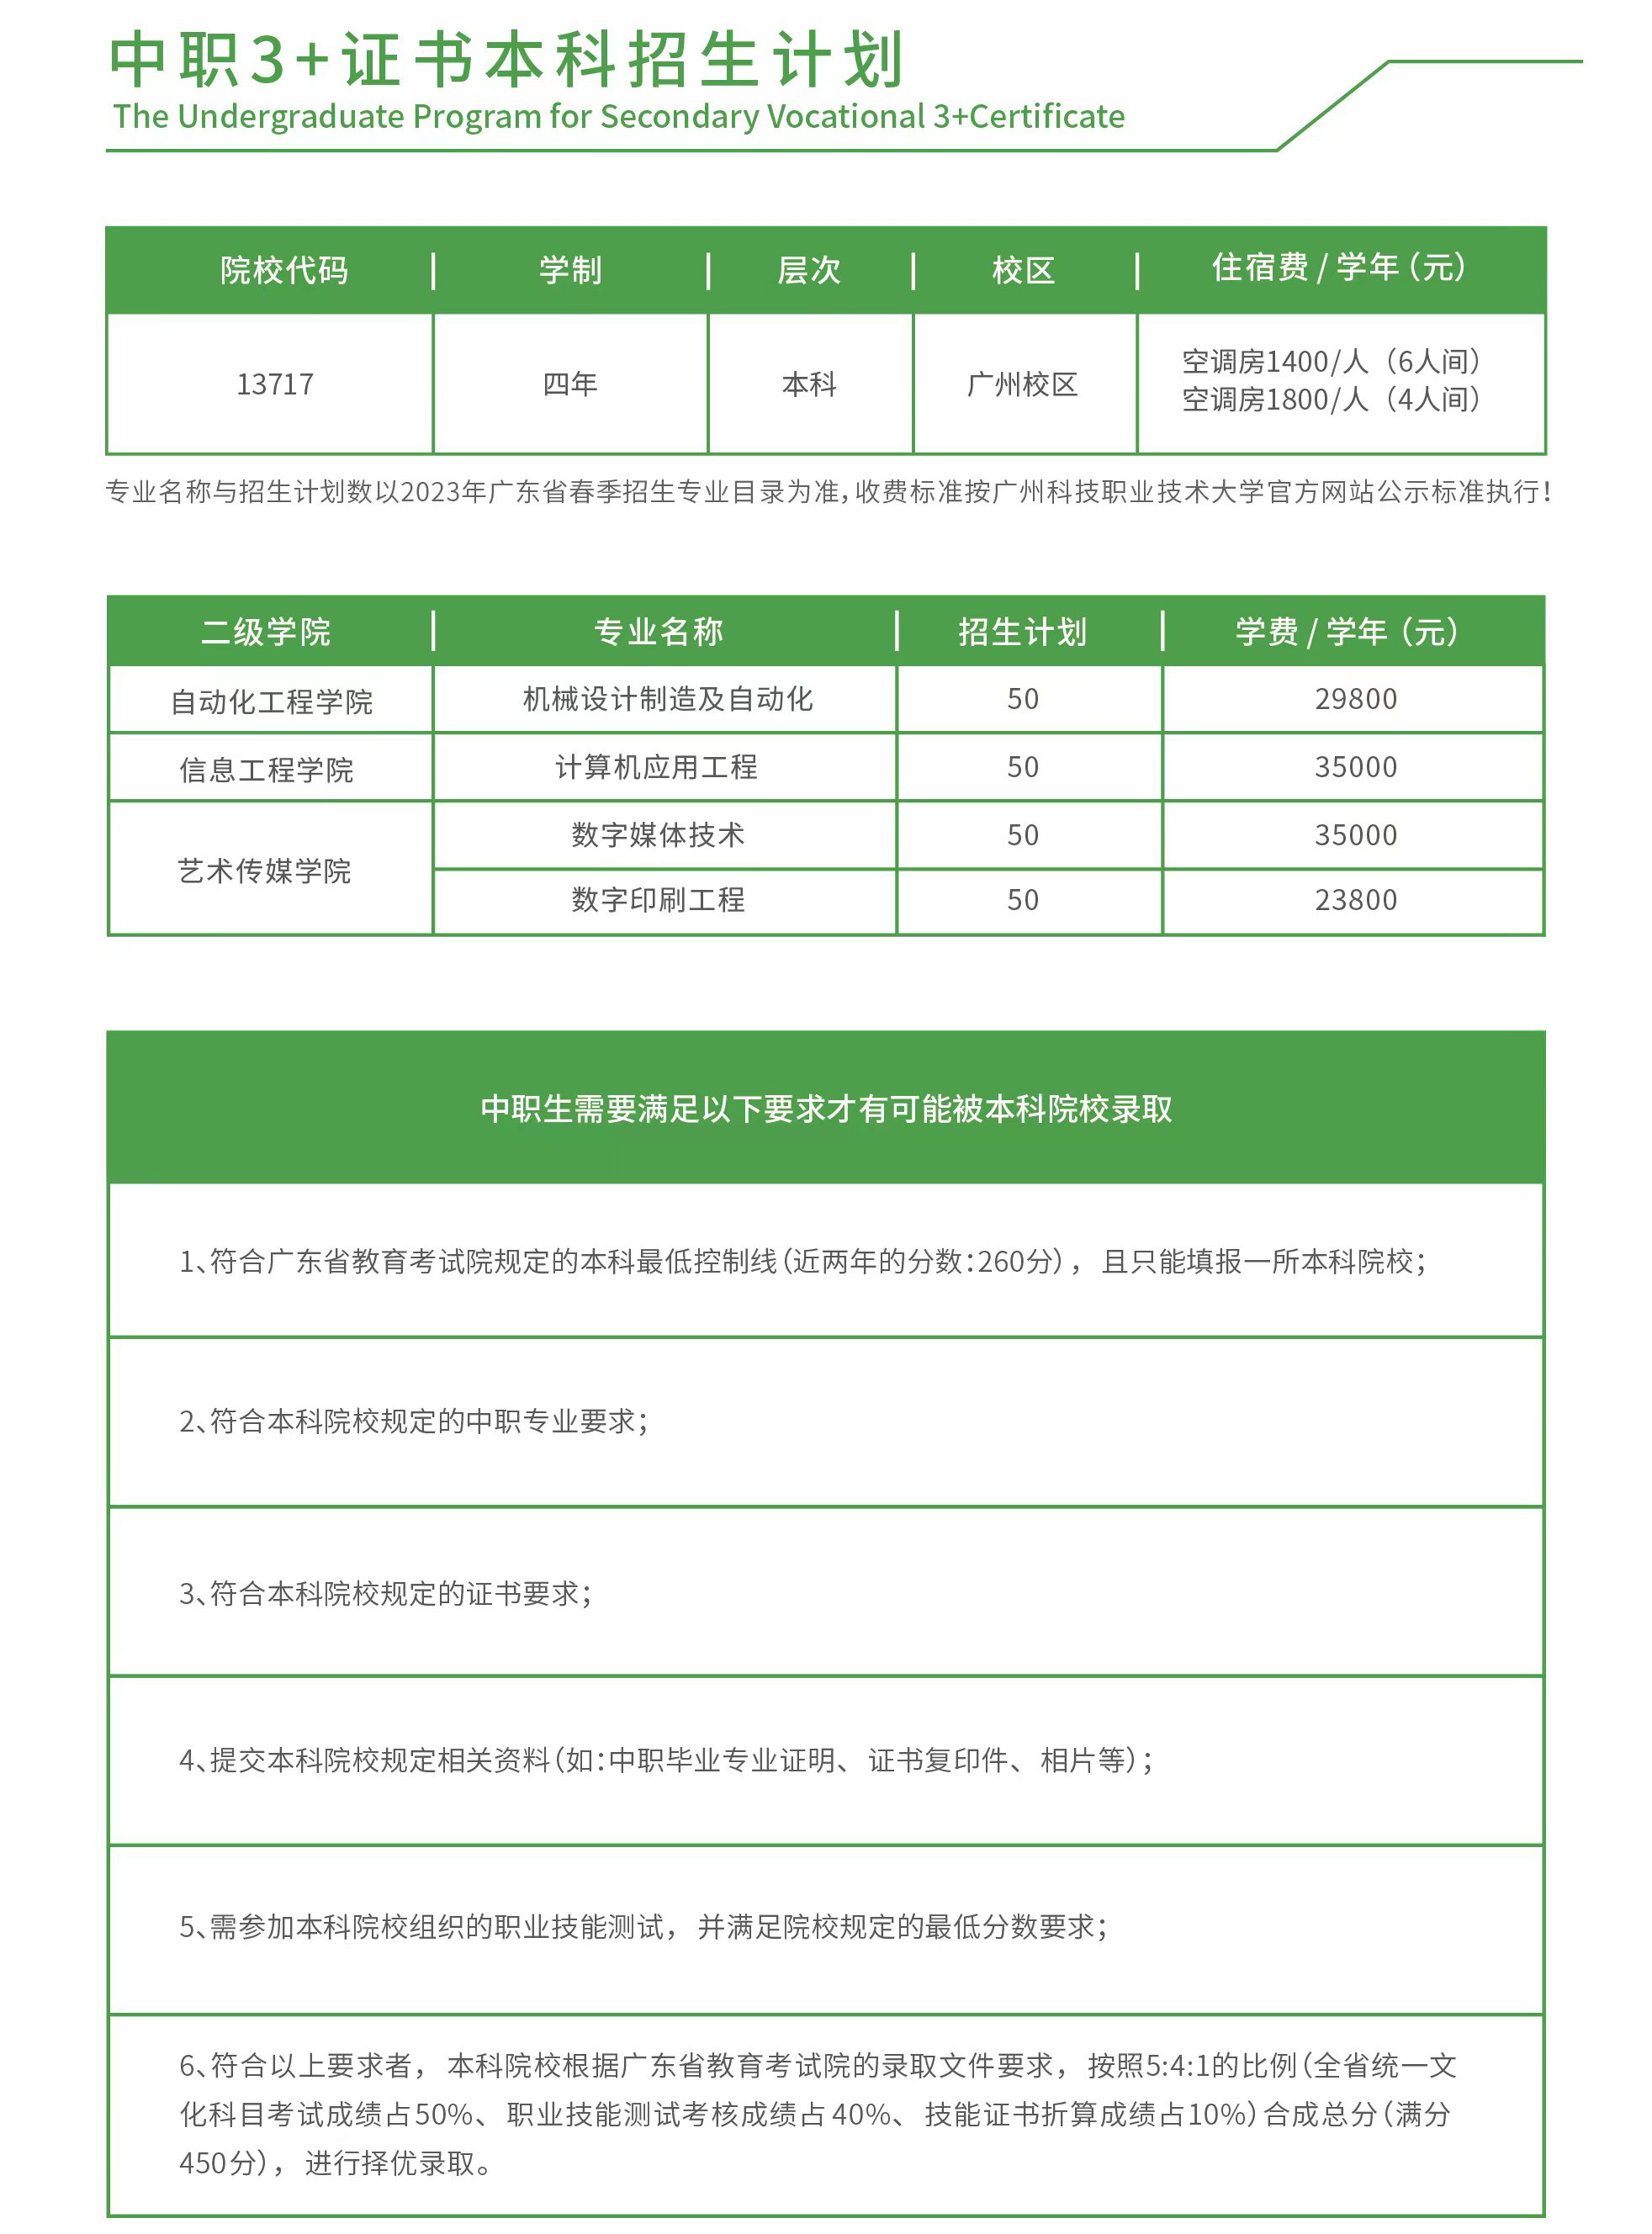 广州科技职业技术大学3+证书招生计划